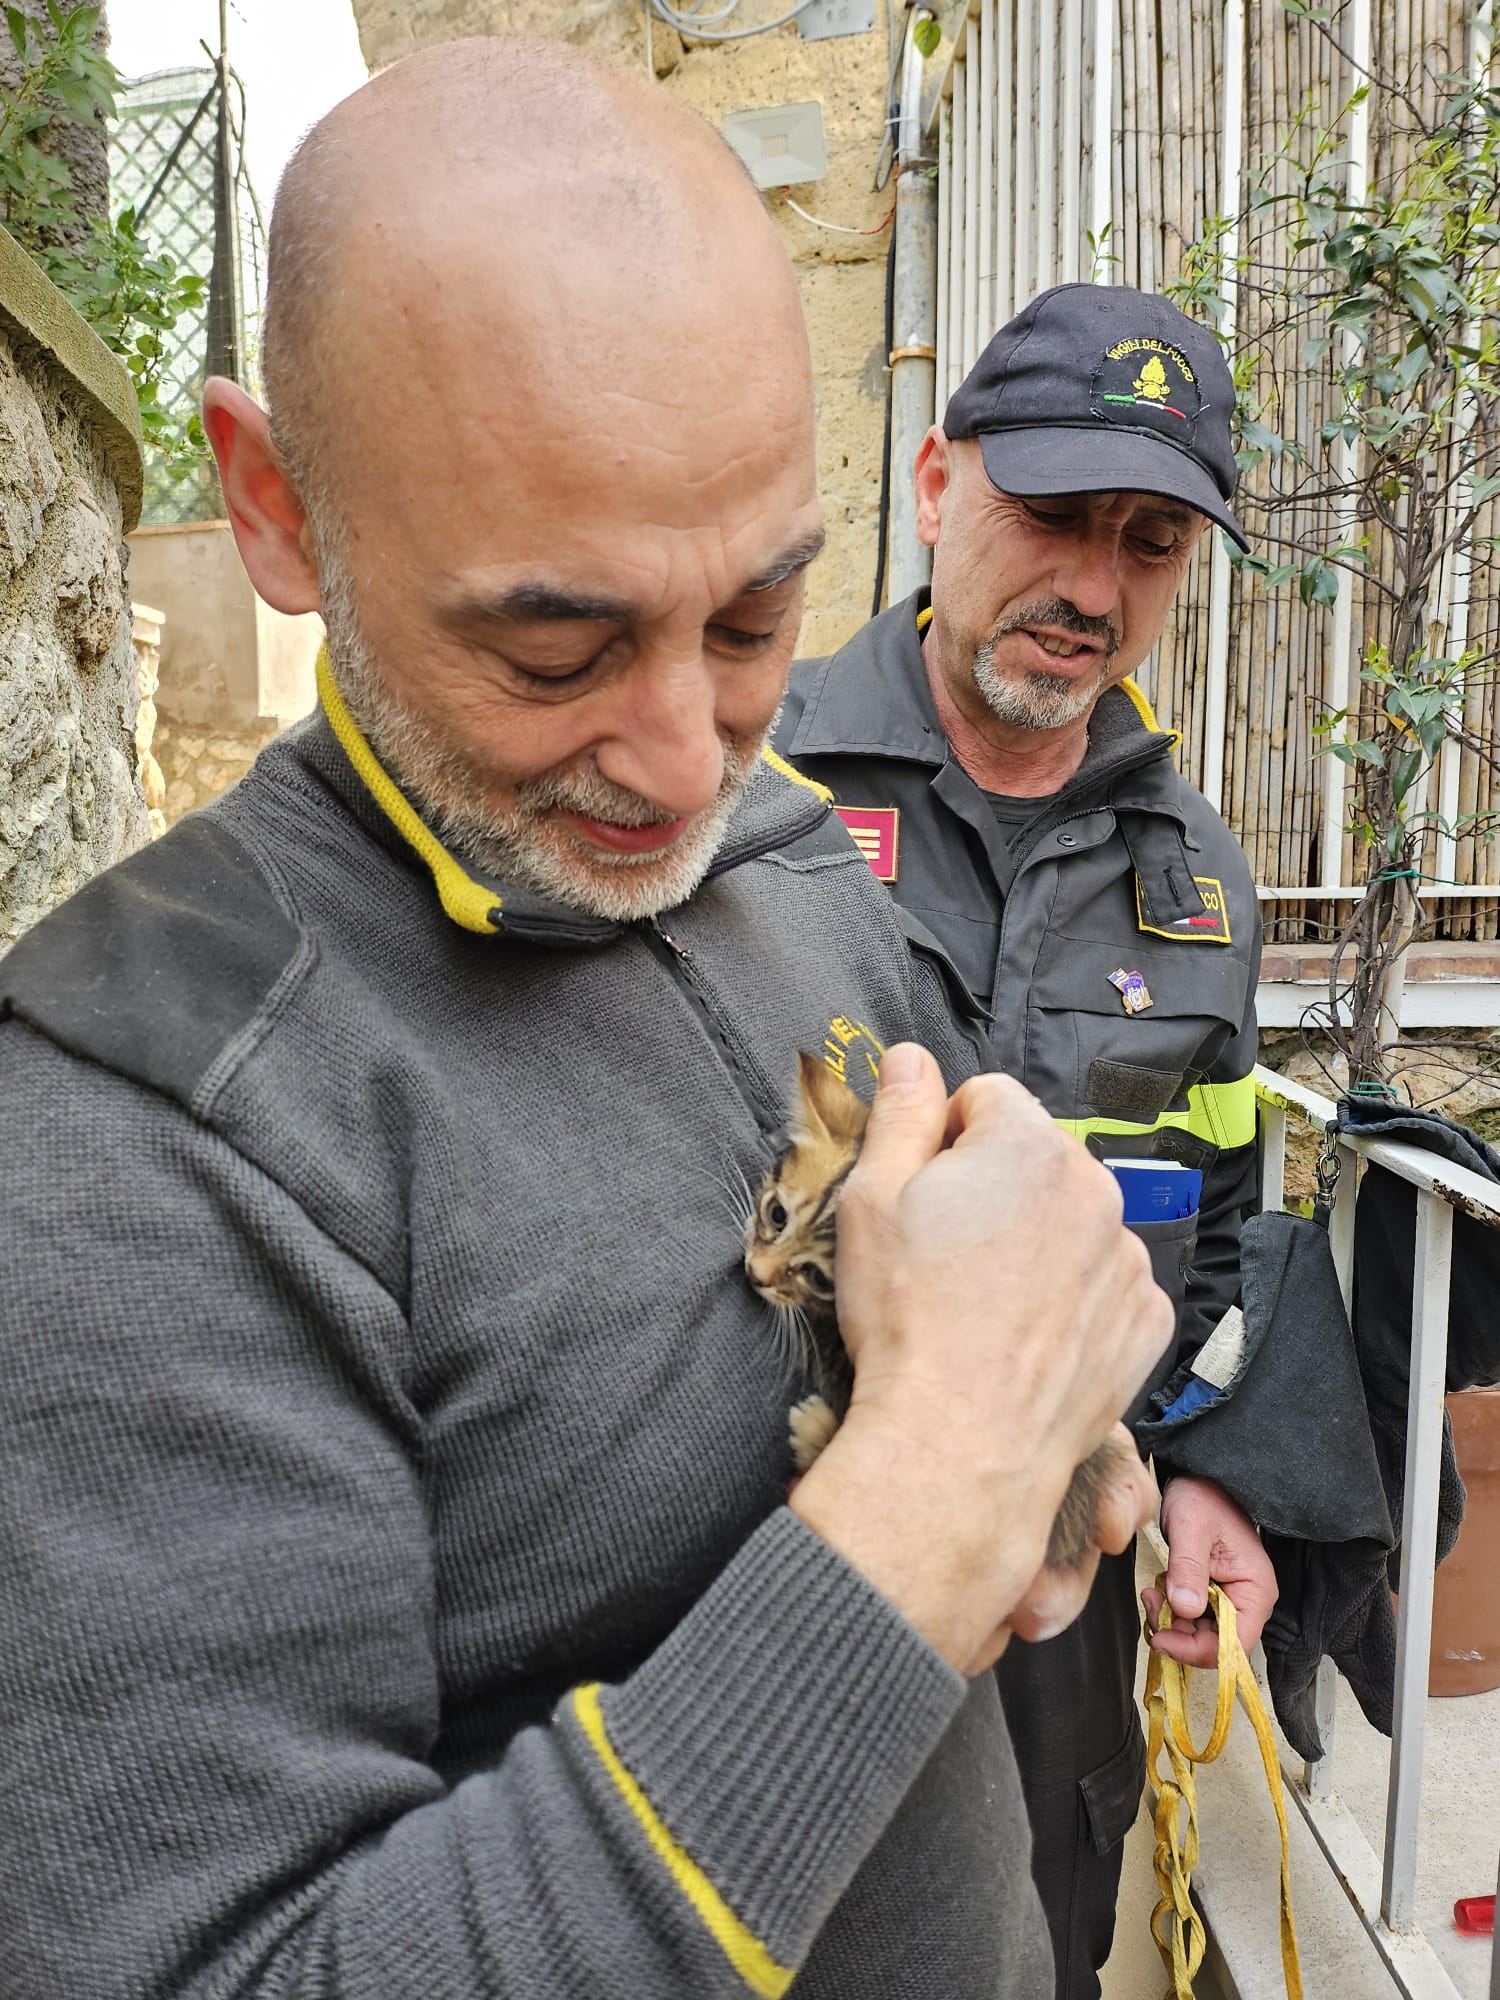 Gattino intrappolato in un tubo al b&b salvato dai vigili dei fuoco di Capri